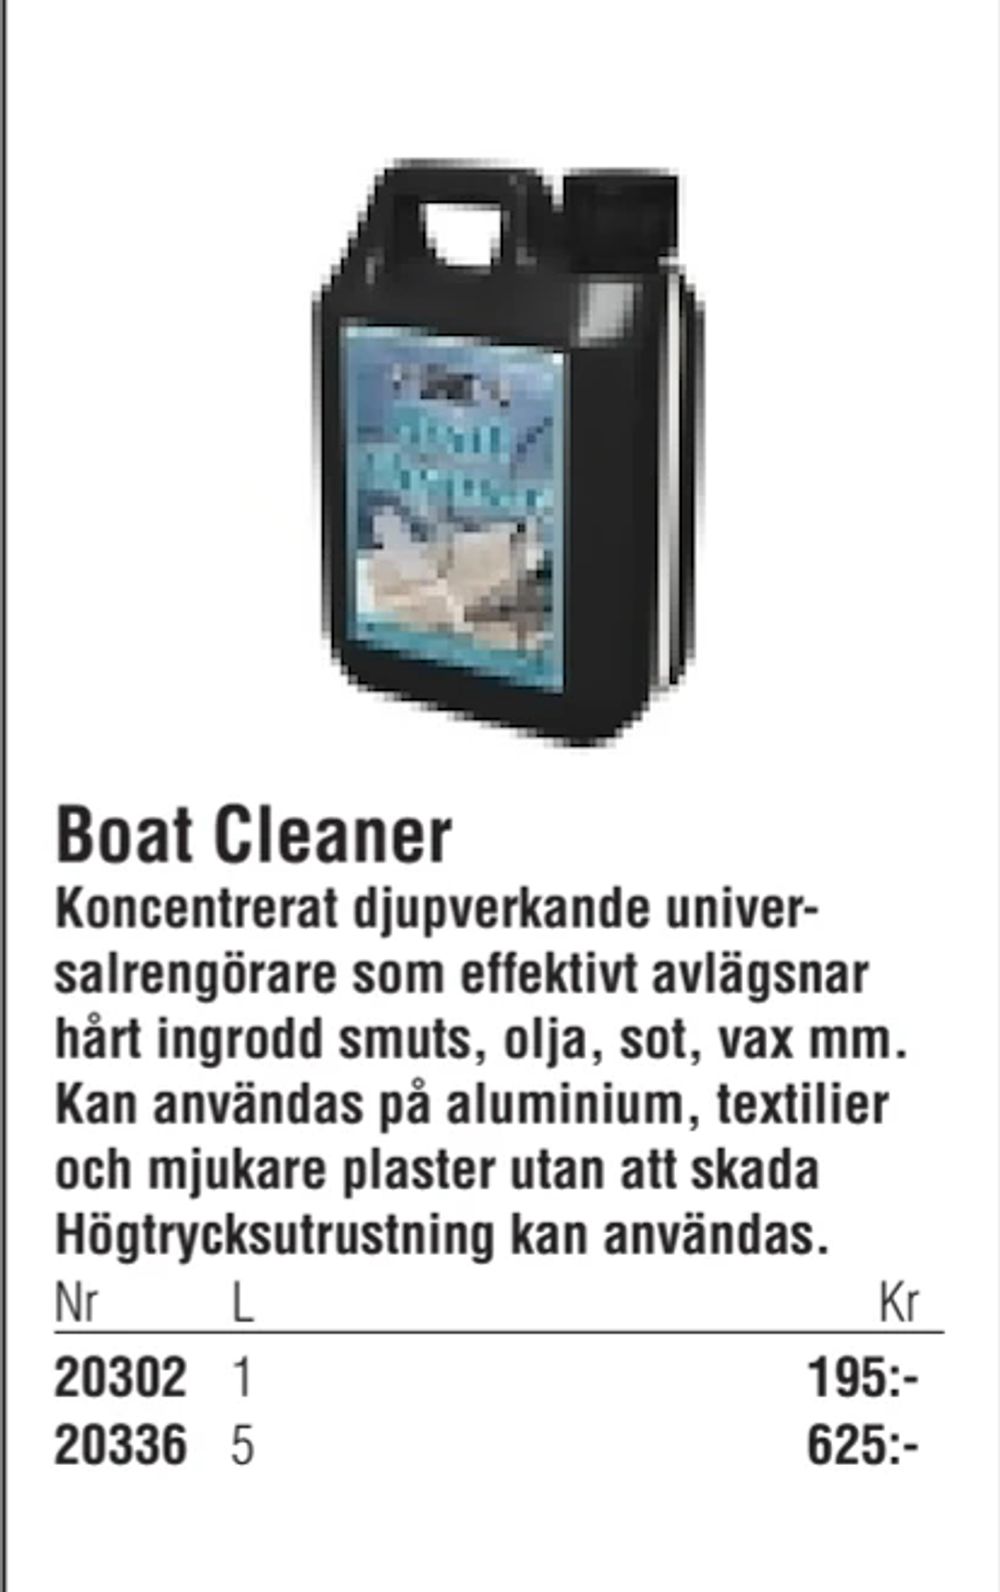 Erbjudanden på Boat Cleaner från Erlandsons Brygga för 195 kr